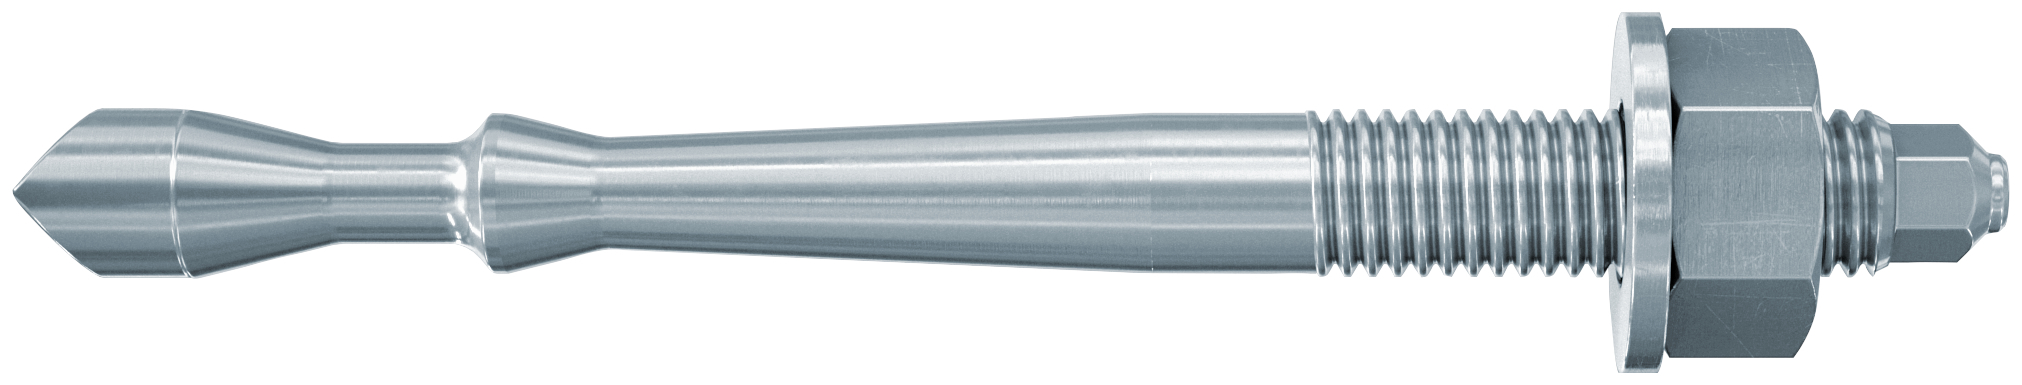 fischer Barra multicono in acciaio FHB II-A S M16x95-100 per ancorante chimico FIS HB (1 Pz.) Barra multicono corta in acciaio zincato classe 8.8. Massime prestazioni a trazione in calcestruzzo fessurato e a ridotte distanze dai bordi. fie1182